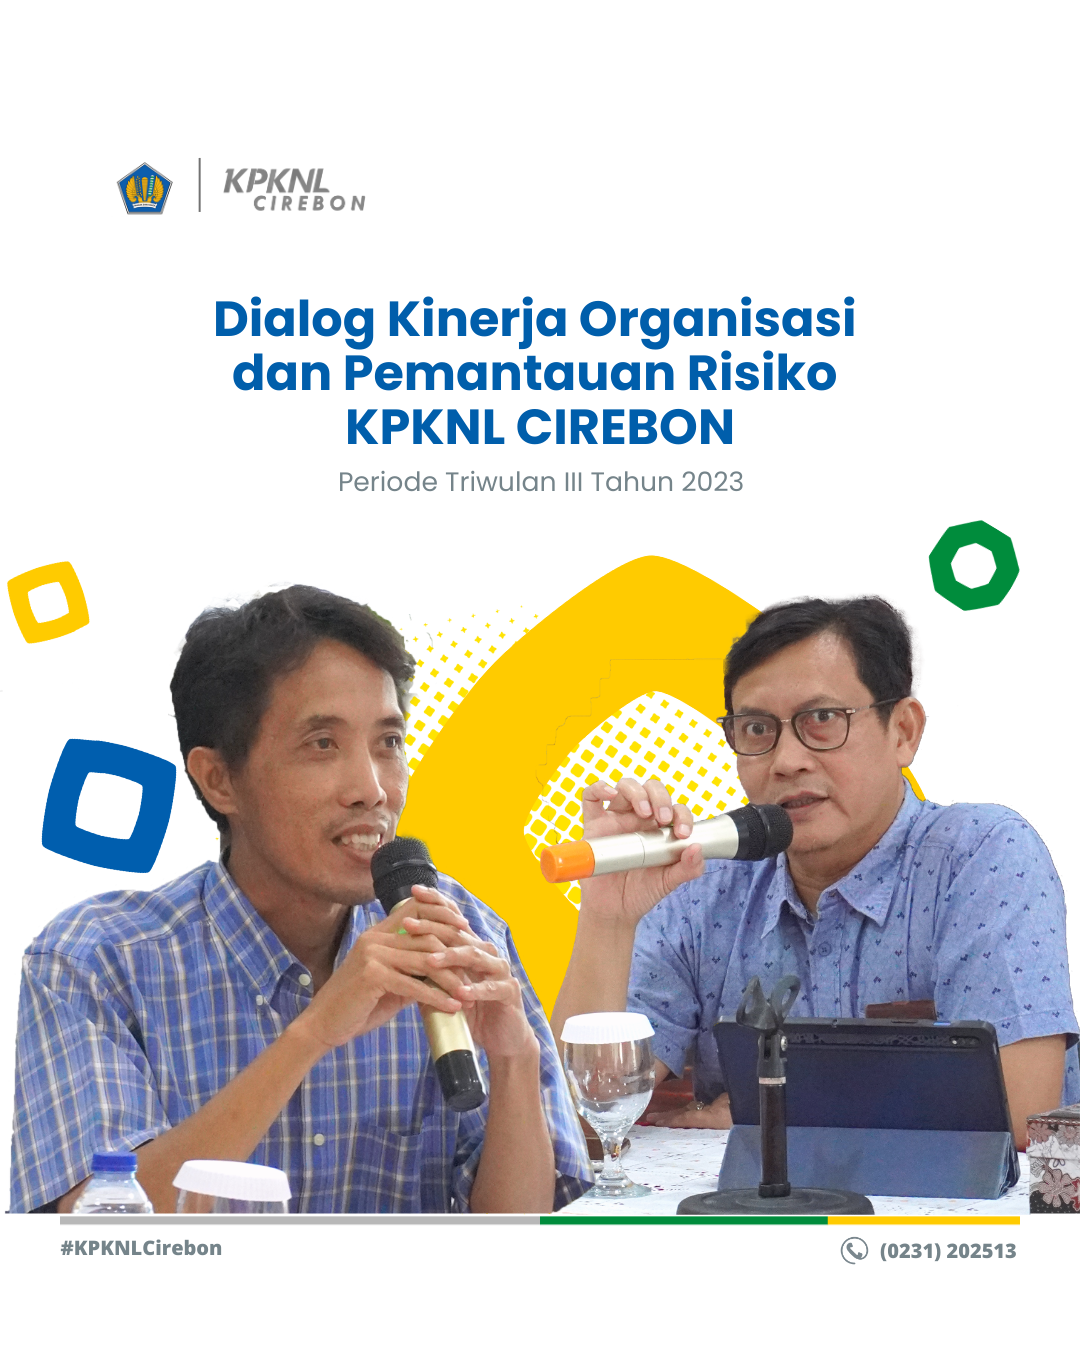 Dialog Kinerja Organisasi dan Pemantauan Risiko Triwulan III Tahun 2023 KPKNL Cirebon